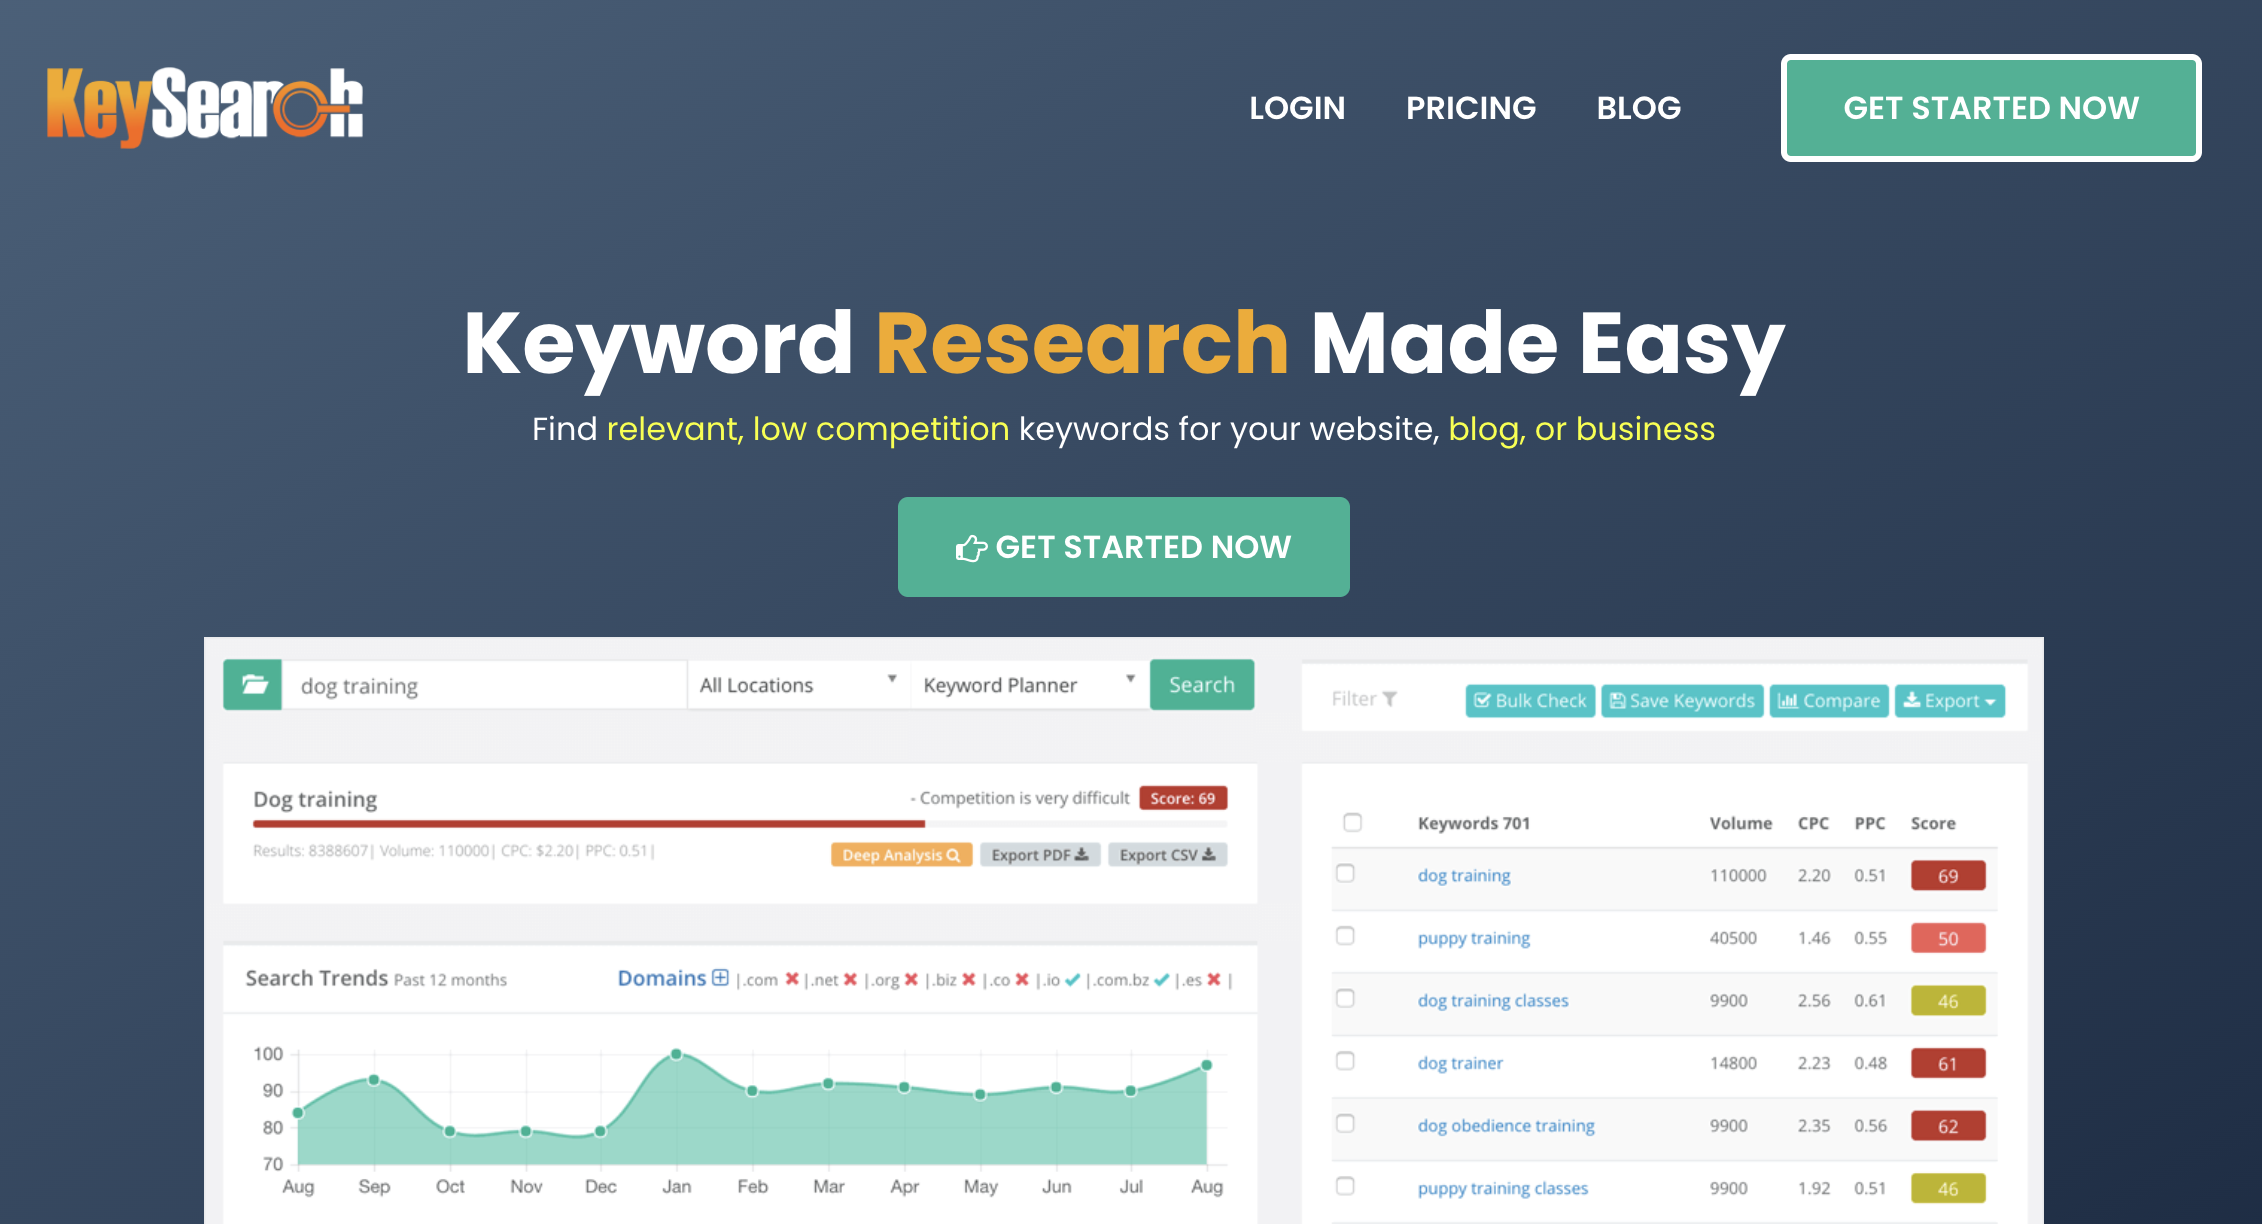 KeySearch website